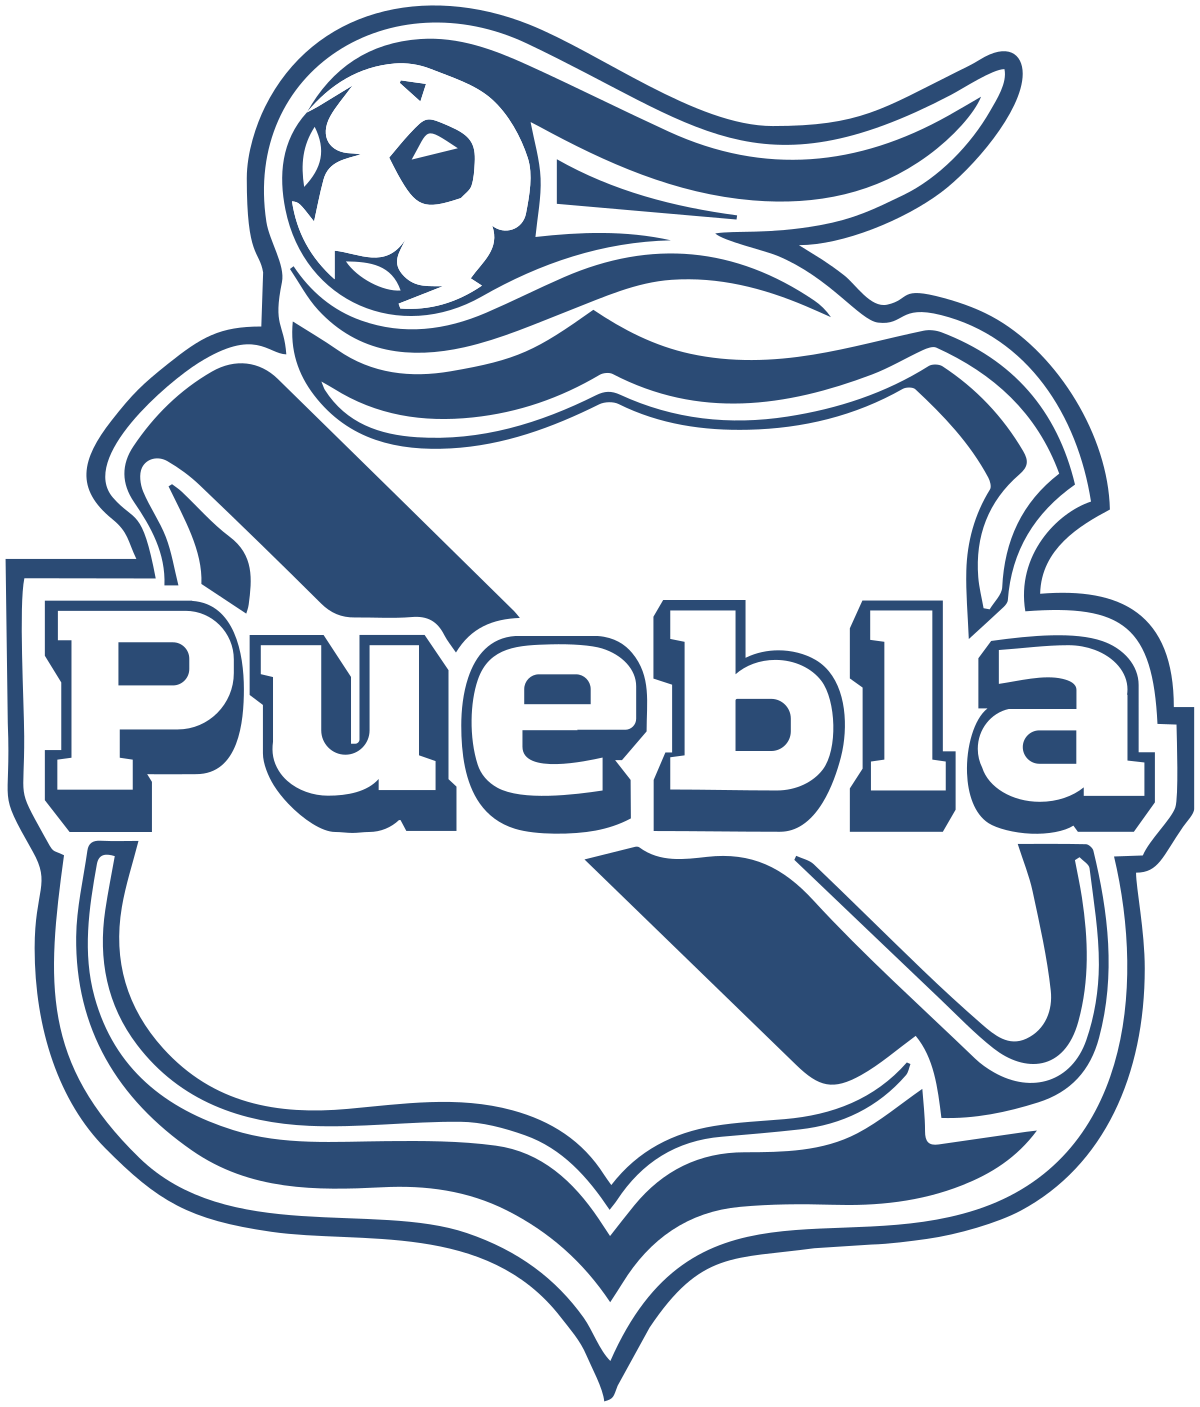 FC Puebla